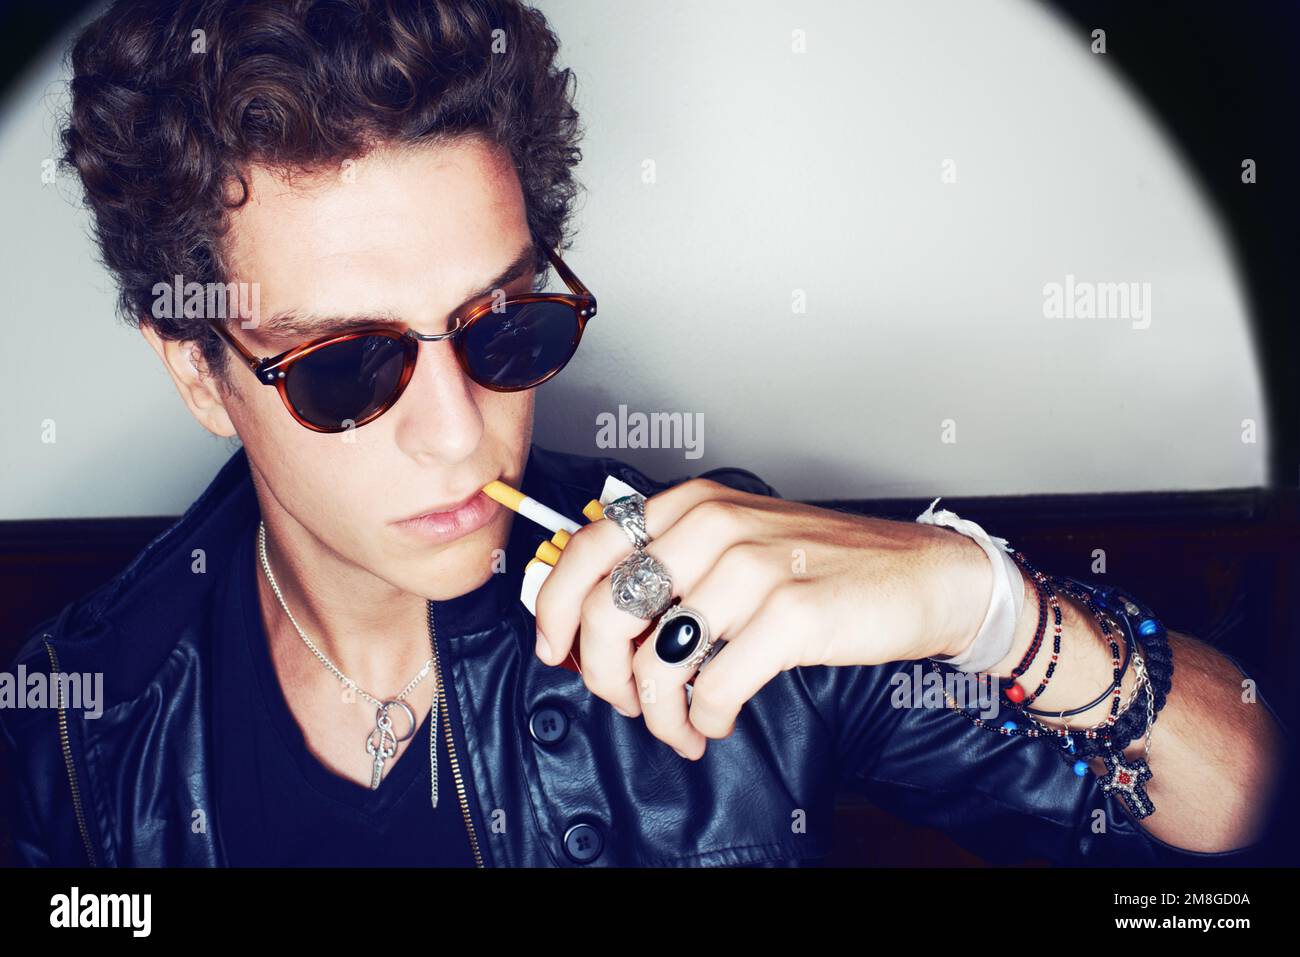 Refroidissement sans effort. Gros plan d'un jeune homme élégant tirant une cigarette hors d'une boîte avec ses lèvres. Banque D'Images